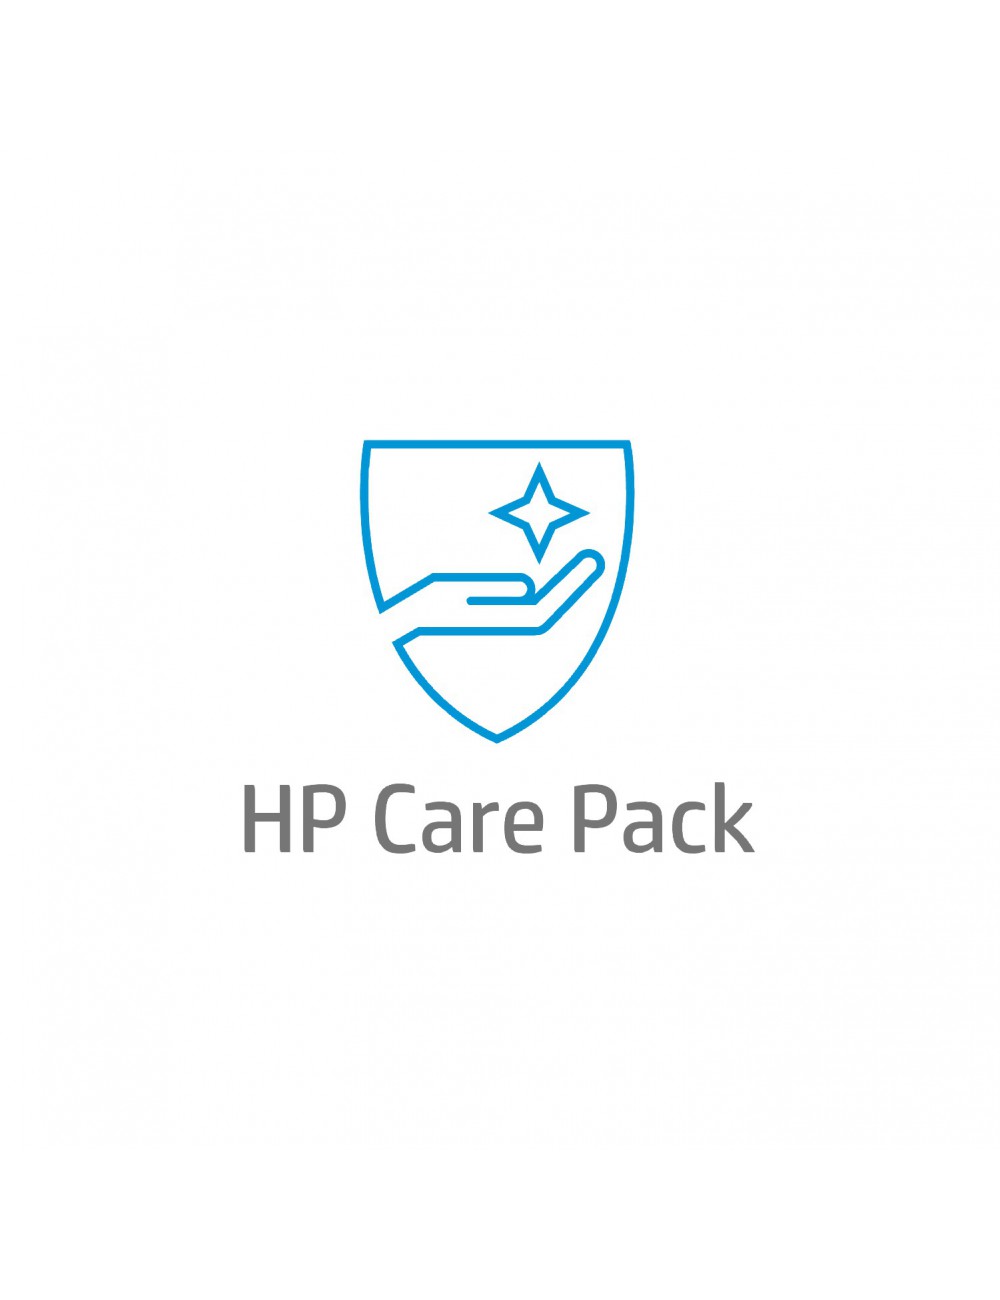 HP Care Pack de 1 año con cambio al día siguiente para impresoras Officejet